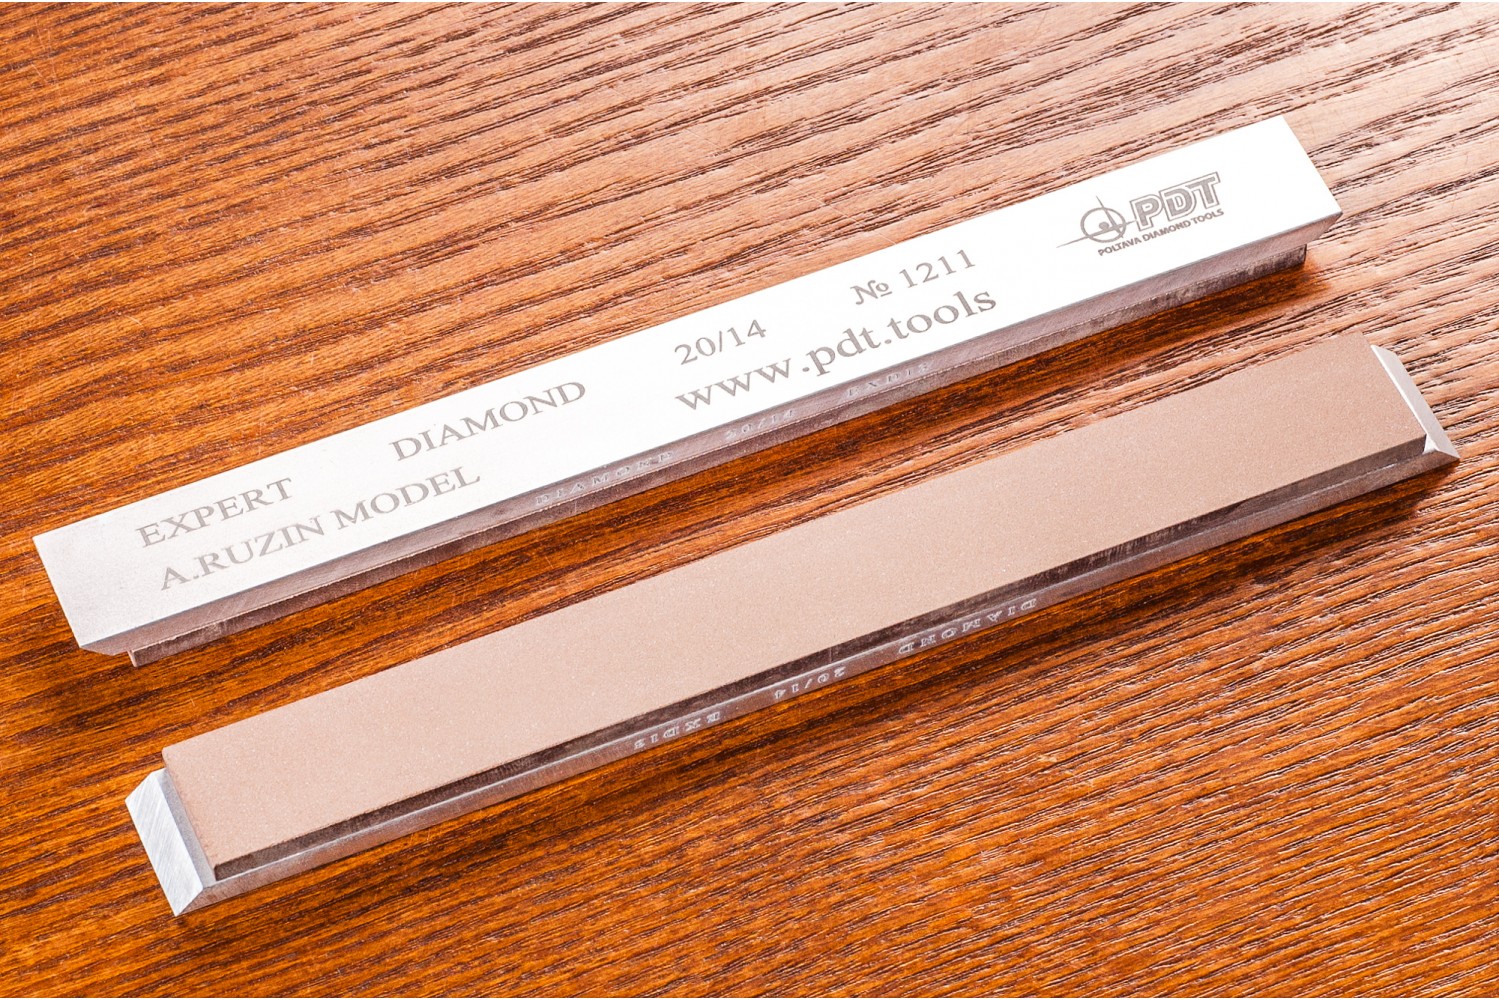 Алмазный брусок для заточки PDT EXPERT 150-17-3мм 20/14 мкм на алюминиевом бланке насадка для заточки ножей и ножниц kwb